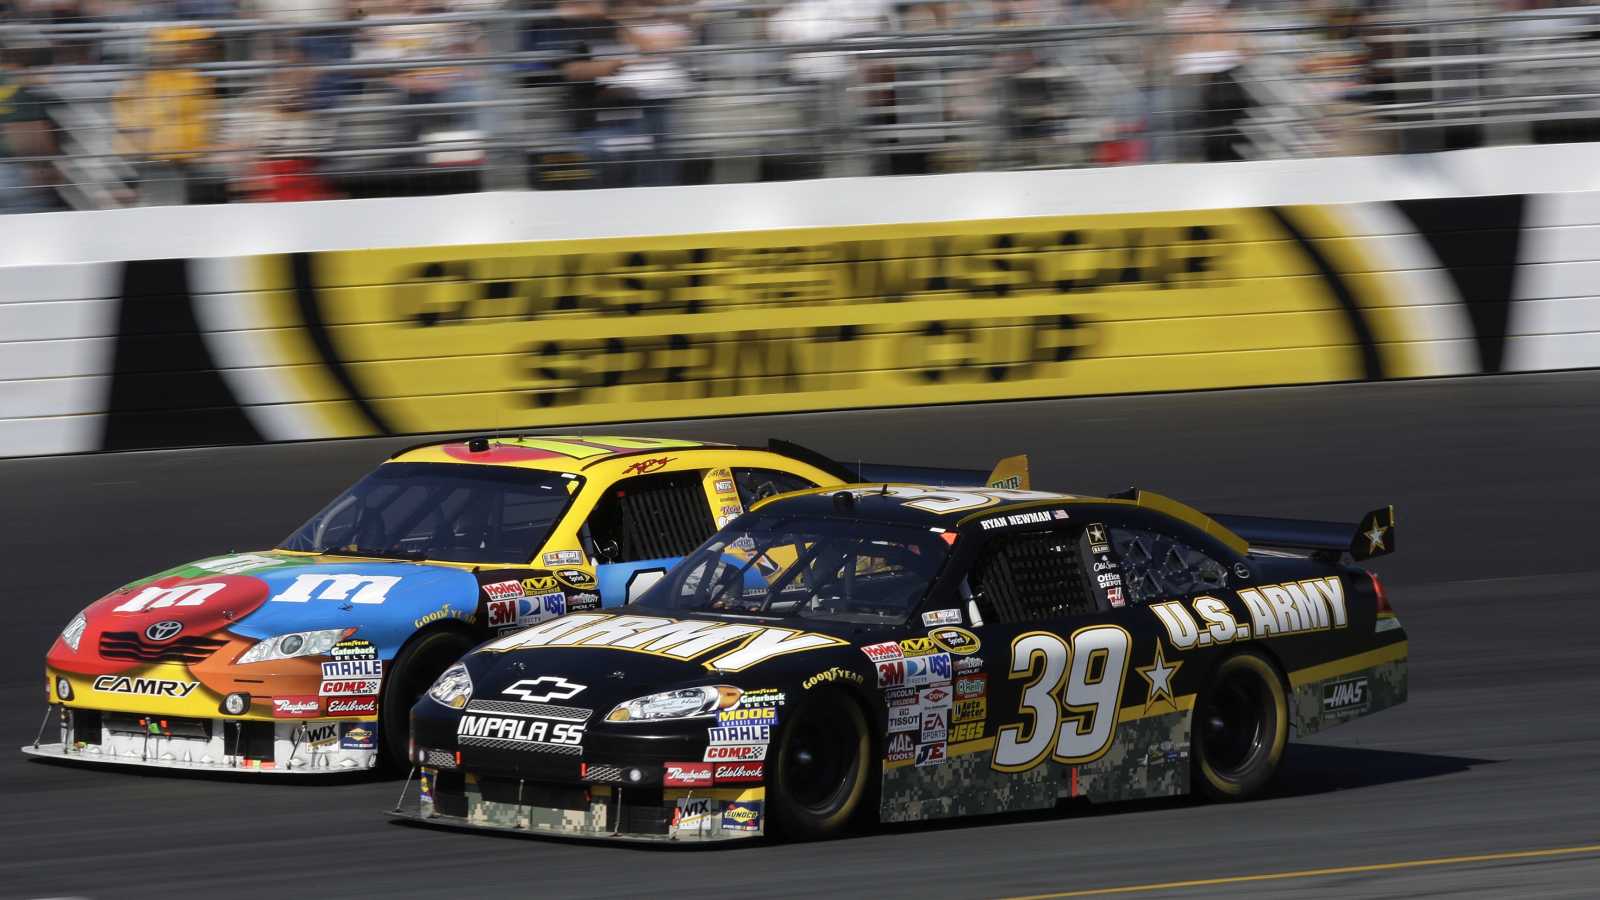 Jezdec NASCAR předvedl těžko uvěřitelný kousek, který se naučil na GameCube. Postupil díky němu v playoff